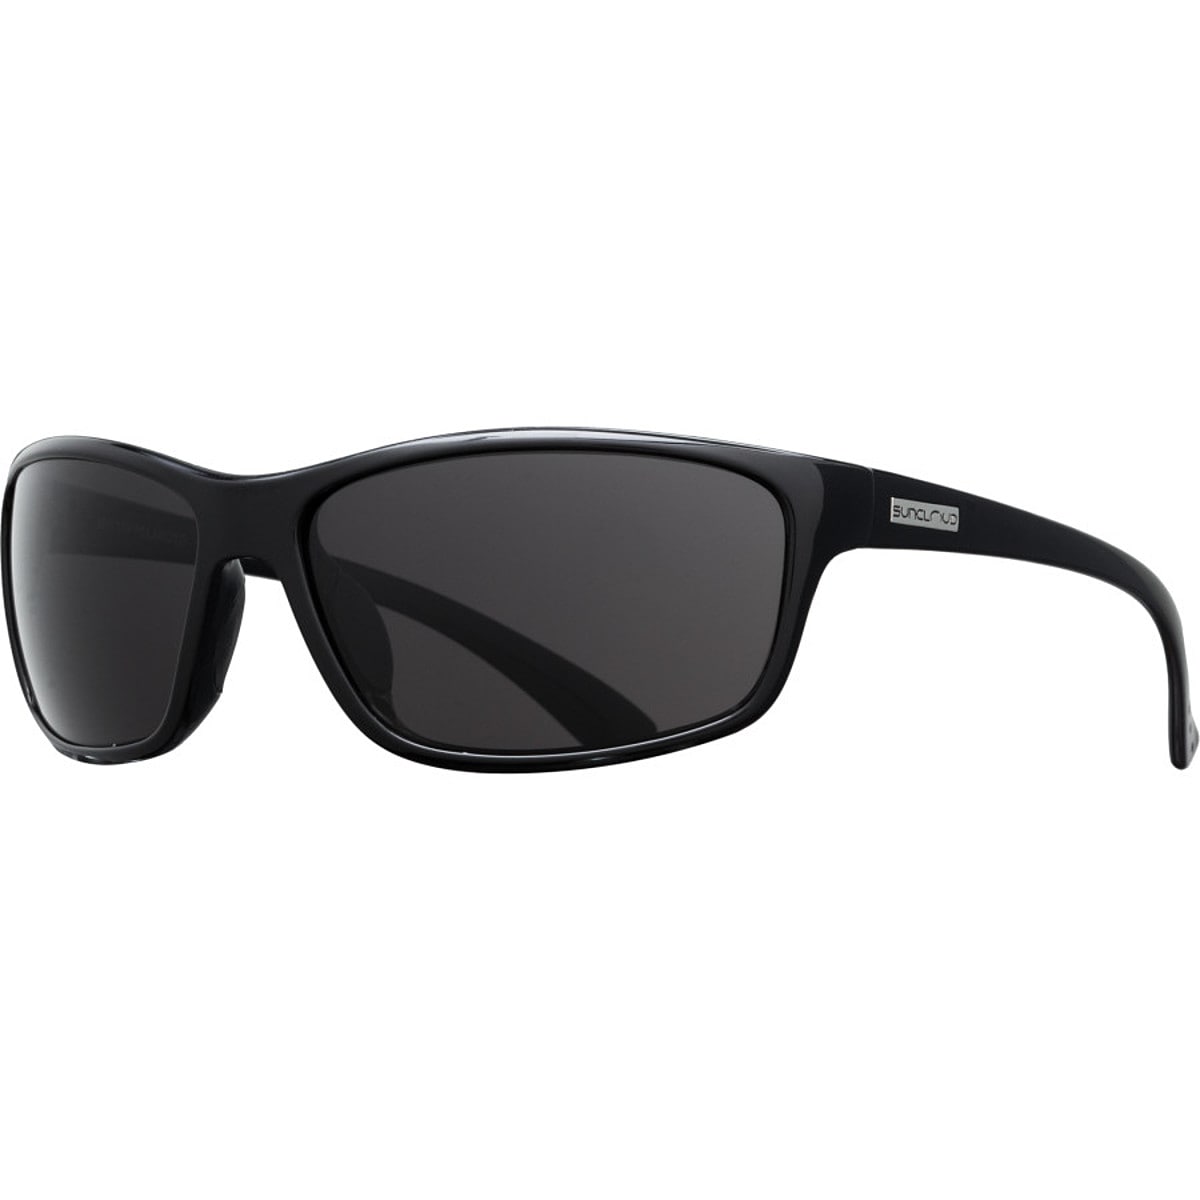 Поляризованные солнцезащитные очки sentry Suncloud Polarized Optics, цвет black/gray очки солнцезащитные stylemark polarized l1475c